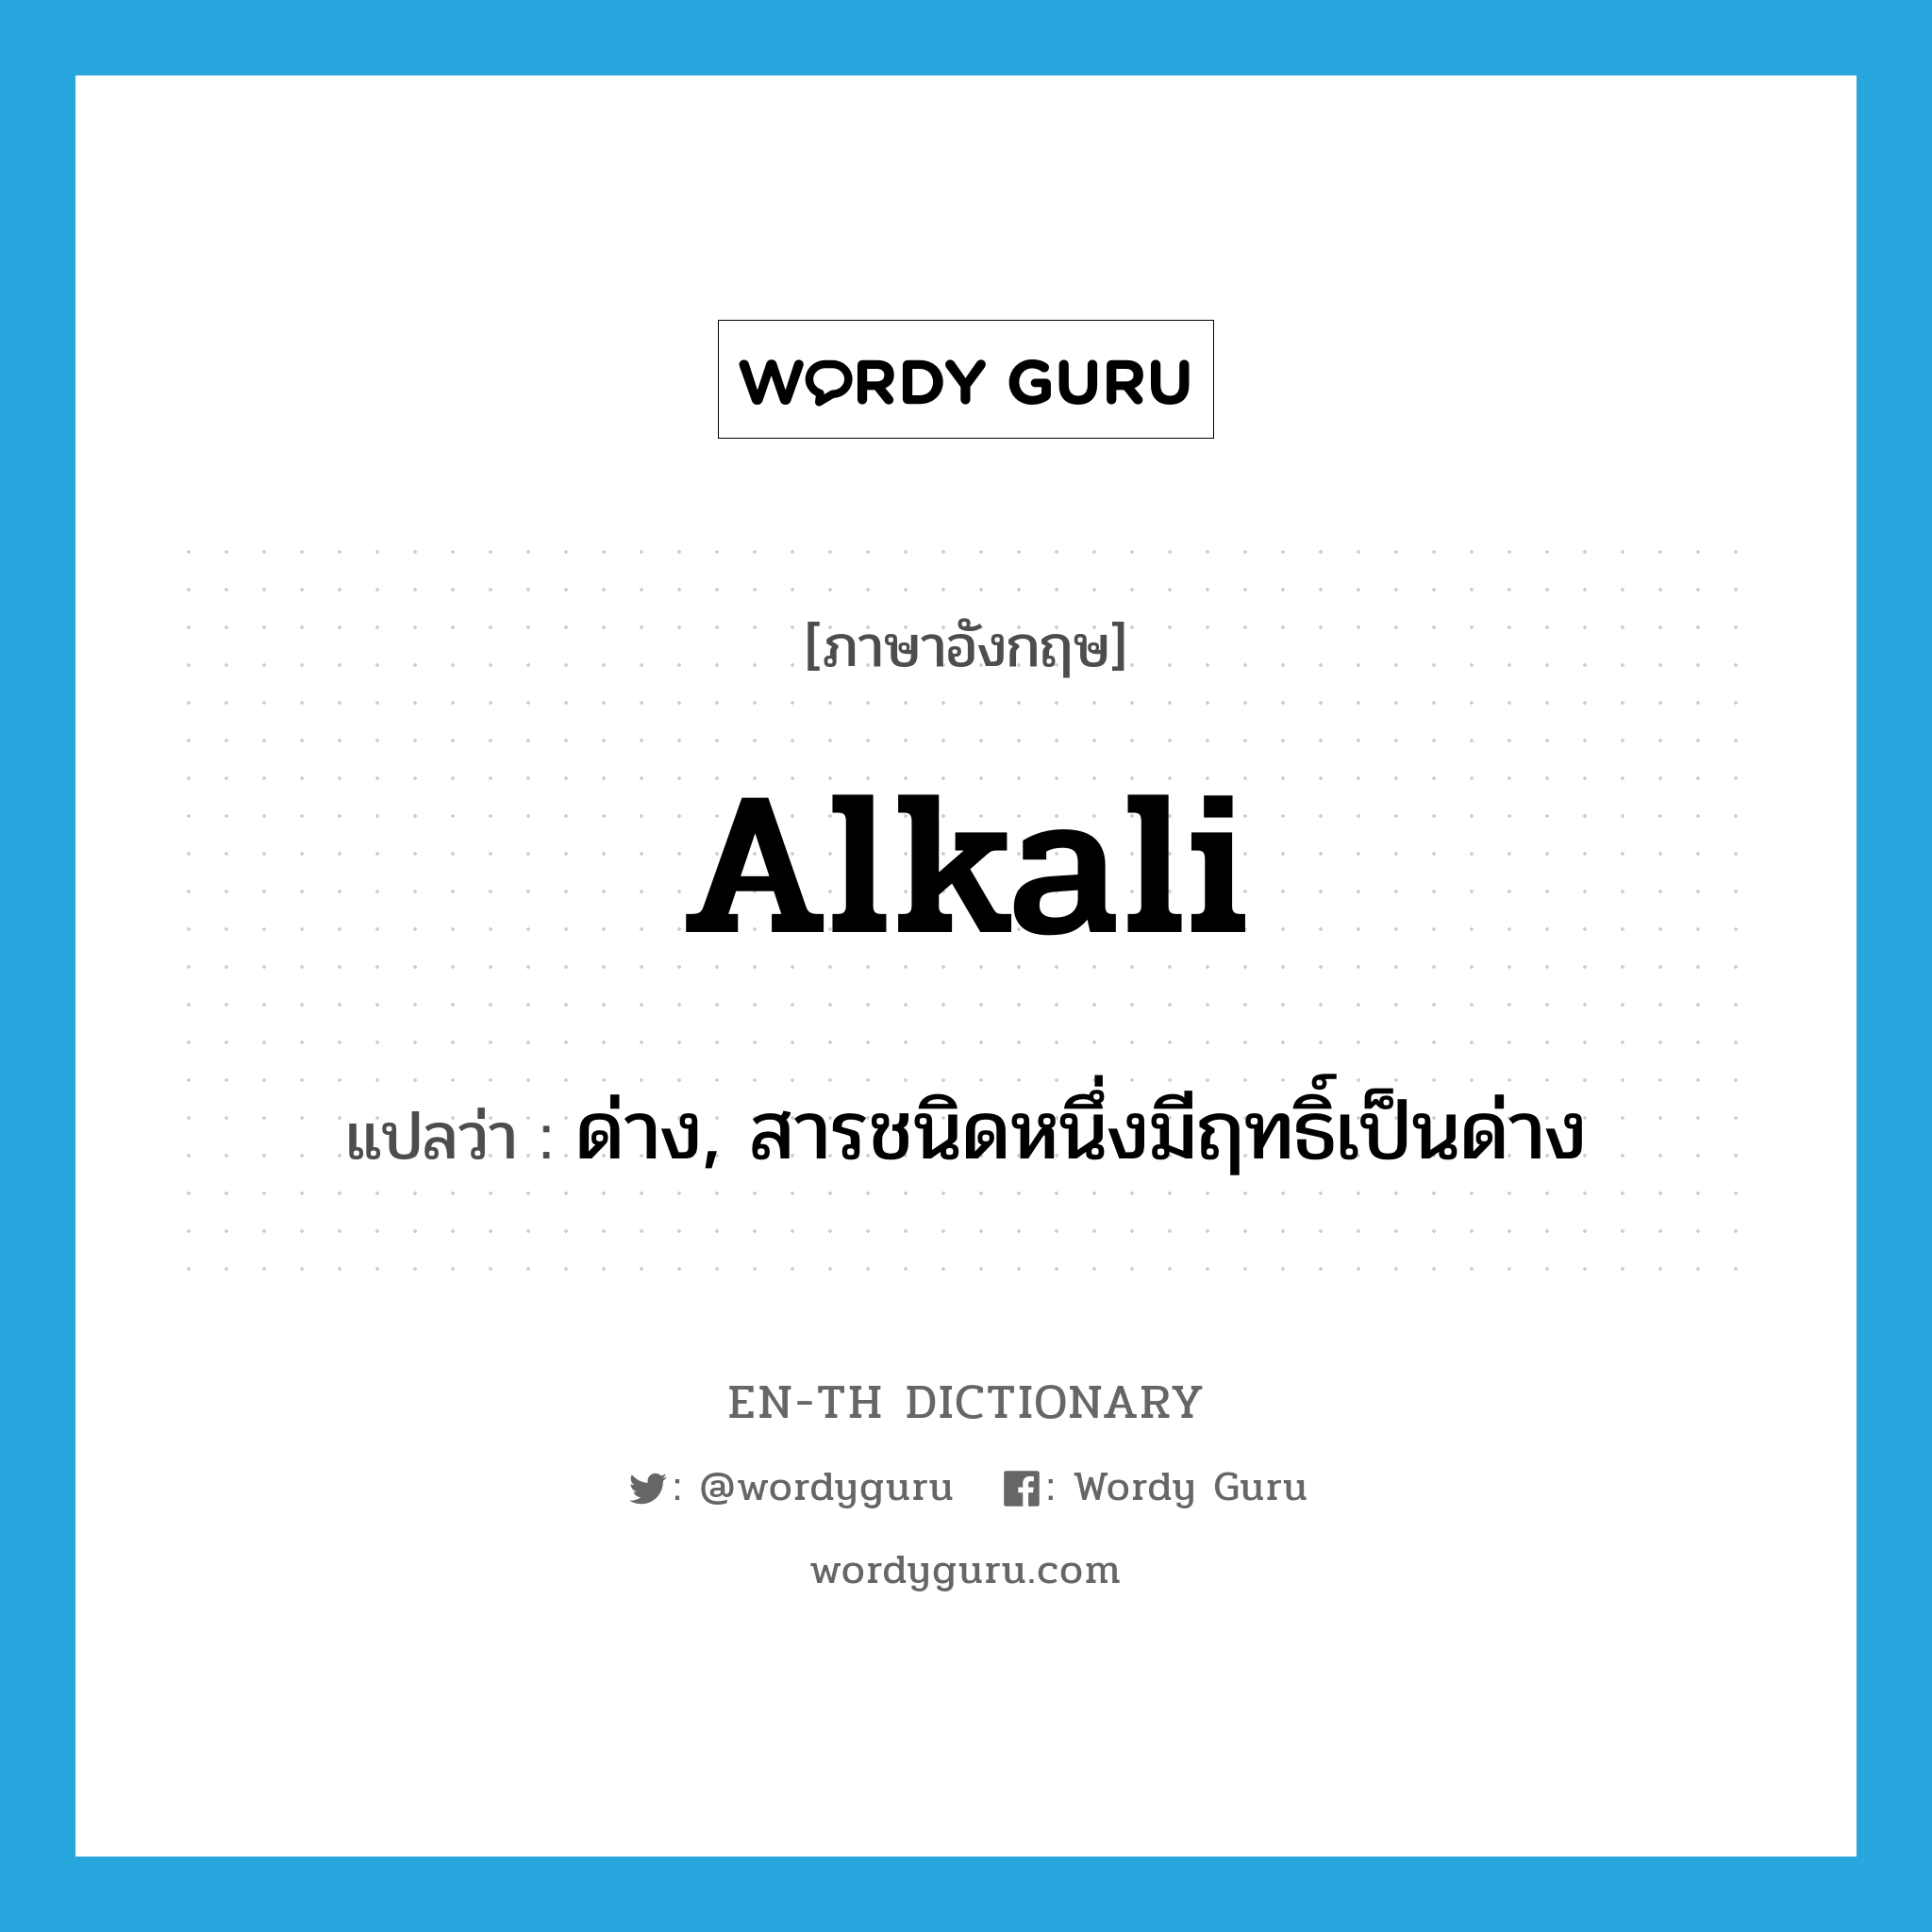 alkali แปลว่า?, คำศัพท์ภาษาอังกฤษ alkali แปลว่า ด่าง, สารชนิดหนึ่งมีฤทธิ์เป็นด่าง ประเภท N หมวด N